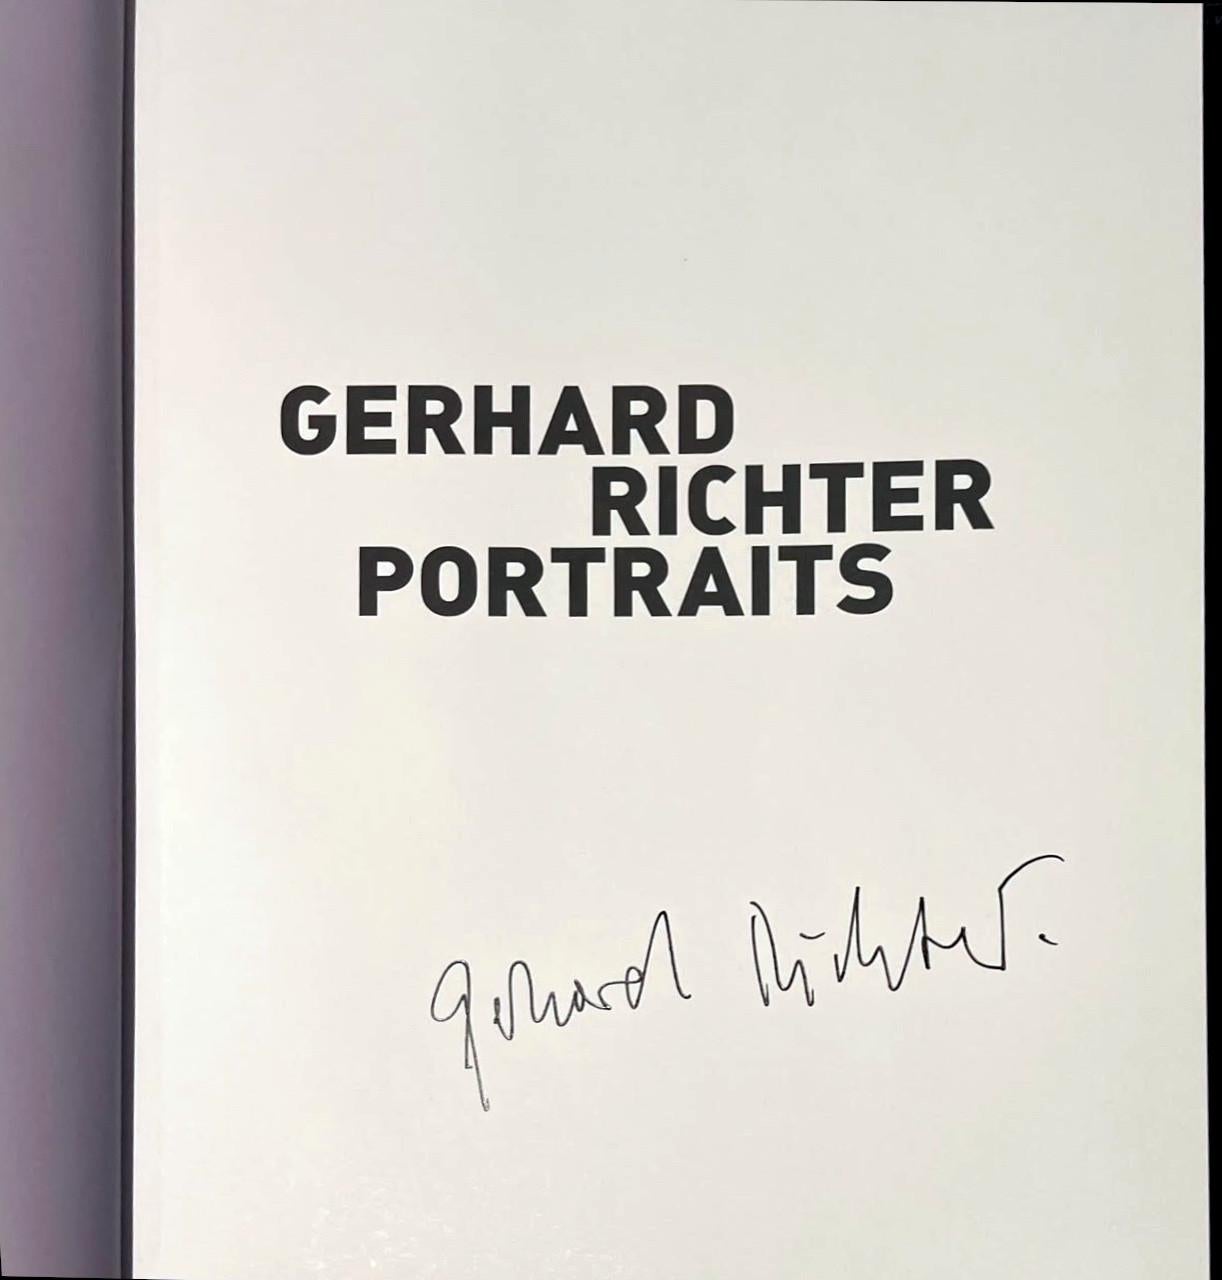 Gerhard Richter
GERHARD RICHTER PORTRAITS (amtlich handsigniertes Exemplar), 2009
Gebundene Monographie mit Schutzumschlag (offiziell handsigniertes Exemplar)
Handsigniert von Gerhard Richter auf dem Titelblatt; mit rotem Band an der vorderen